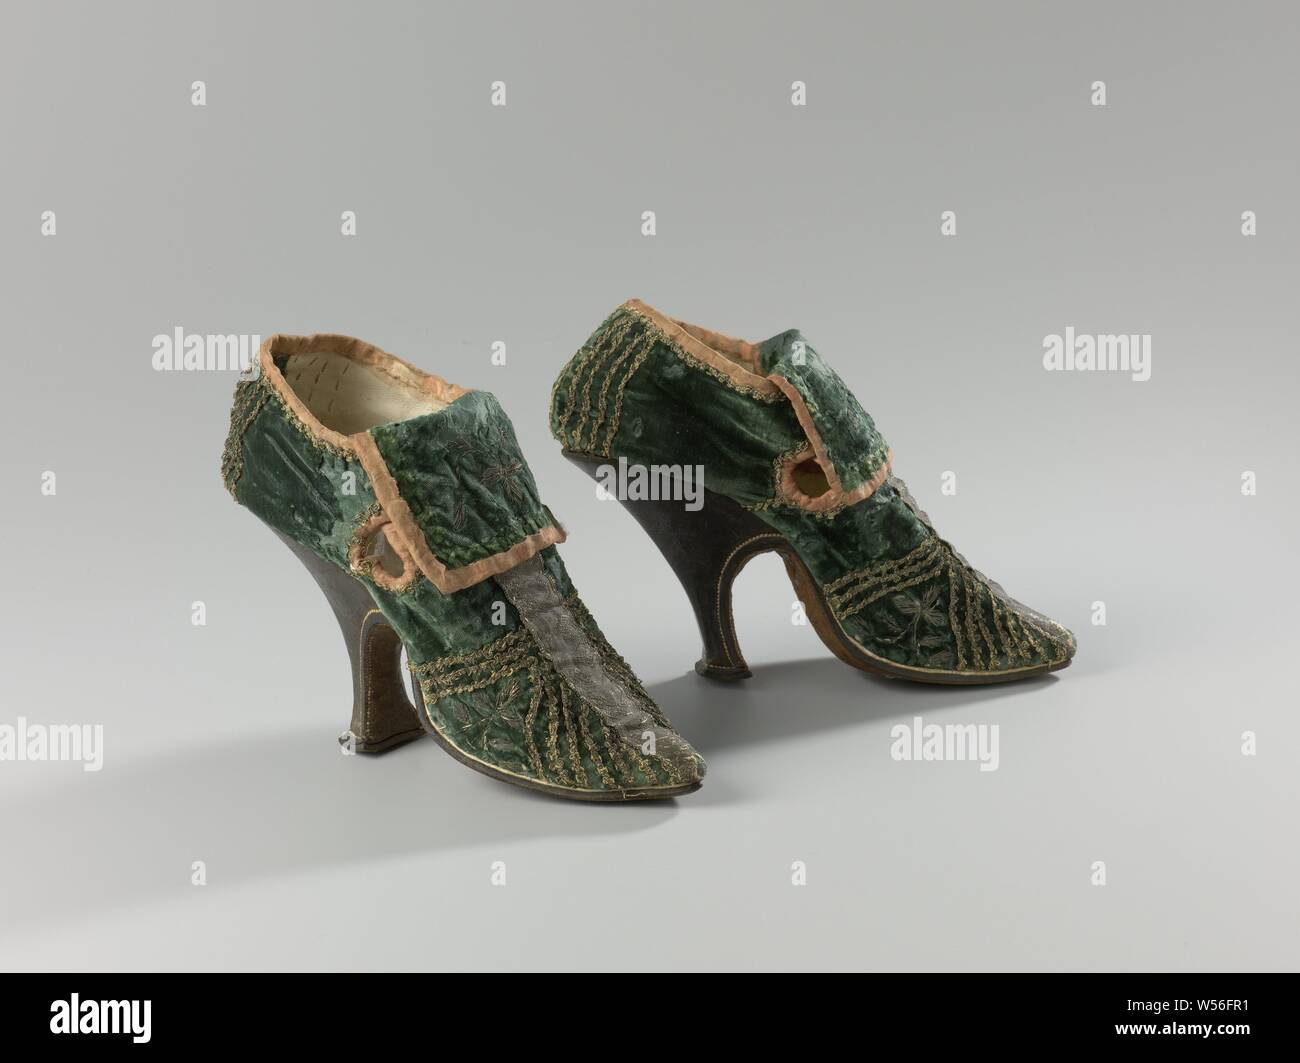 Par de zapatos de mujer High-Heeled par de mujer zapatos de tacón del zapato  de mujer de terciopelo verde decorado con paredes verticales y diagonales  guarnecidos de plata, con tacón alto fino